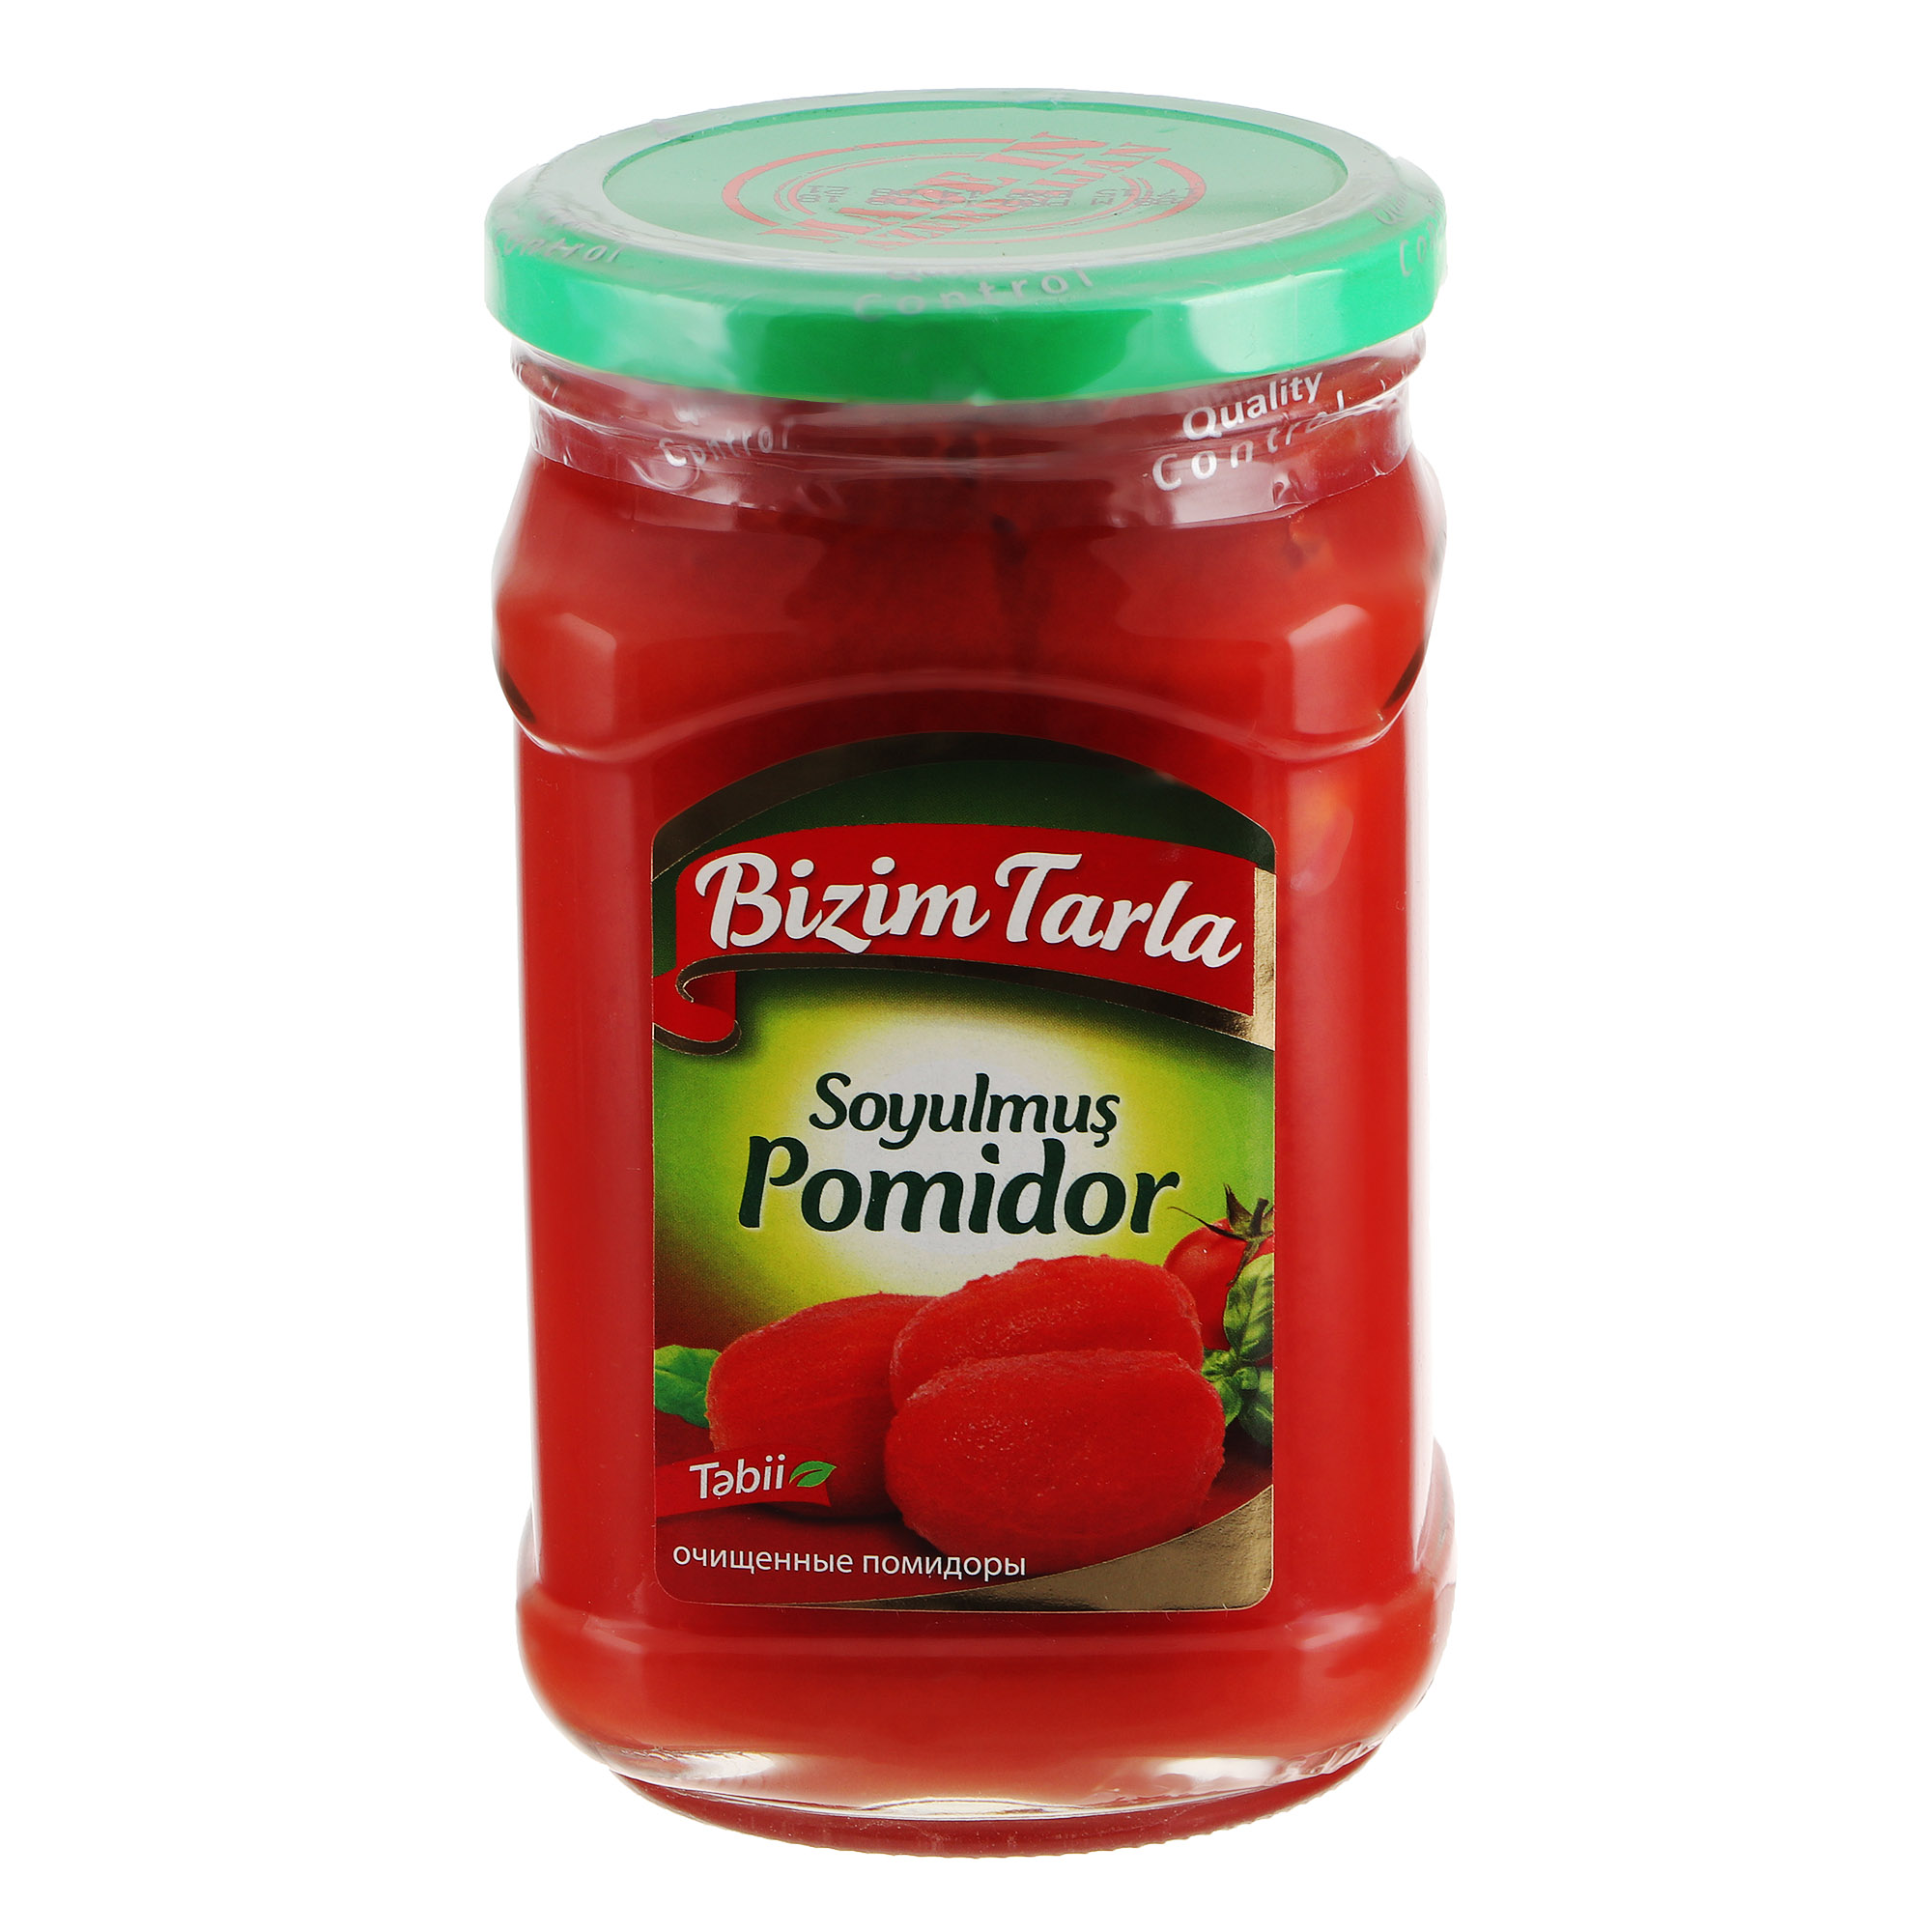 Томаты Bizim Tarla в собственном соку 660 г томаты скатерть самобранка в собственном соку 720 гр